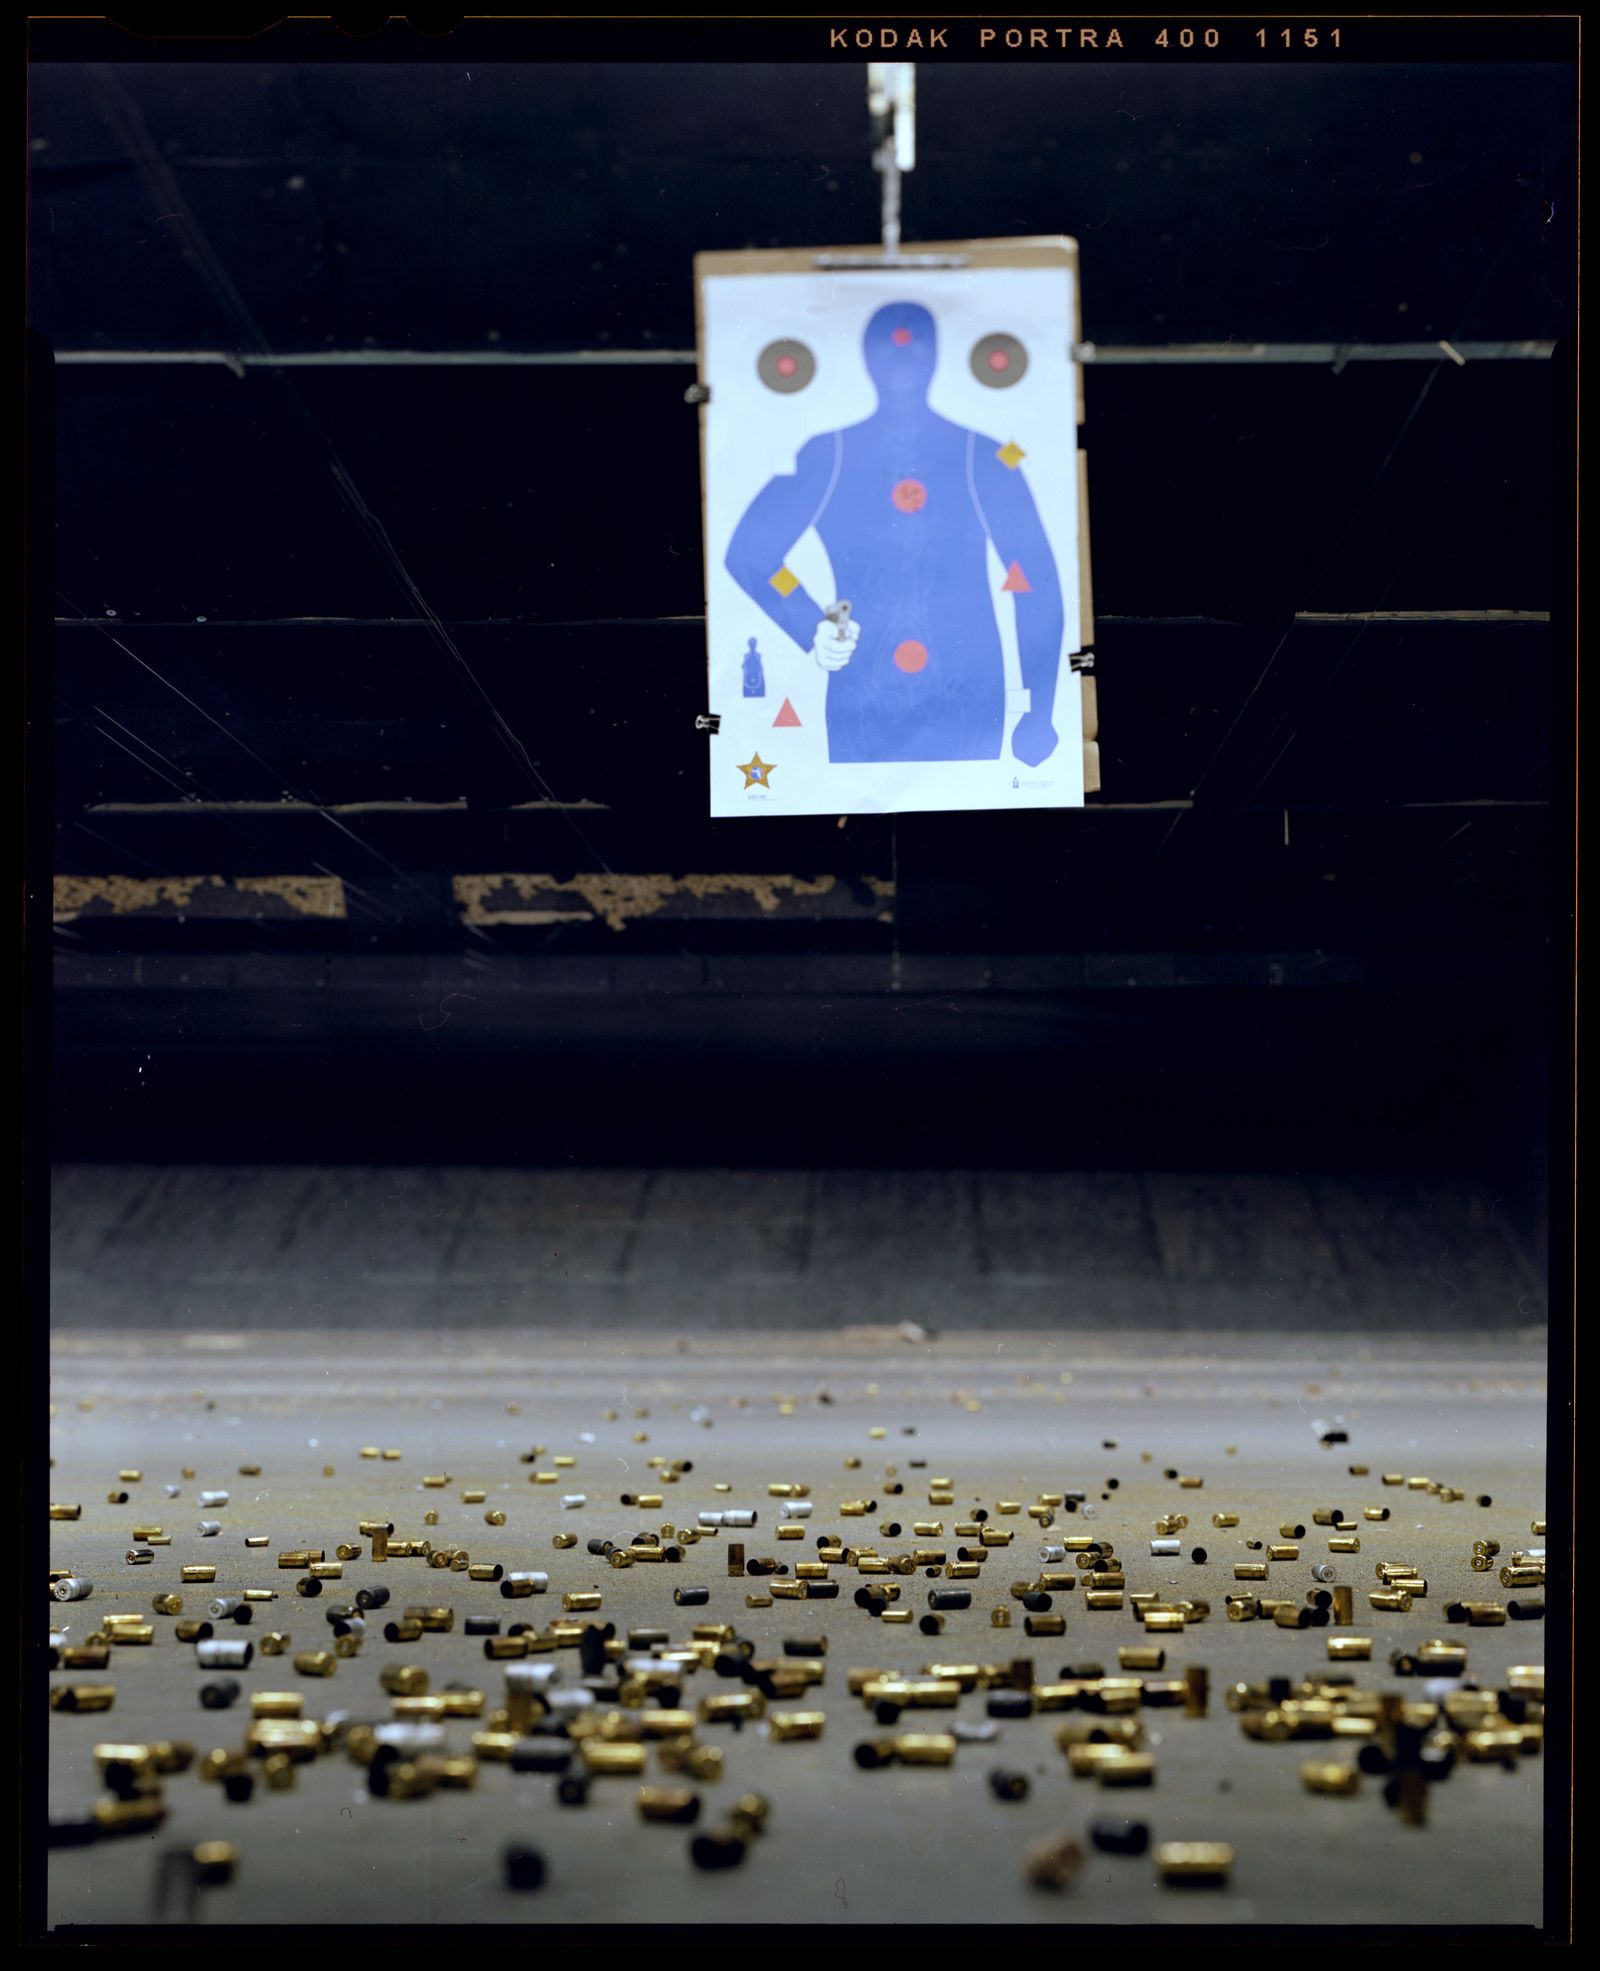 © Christian K. Lee - Shells on a gun range floor.